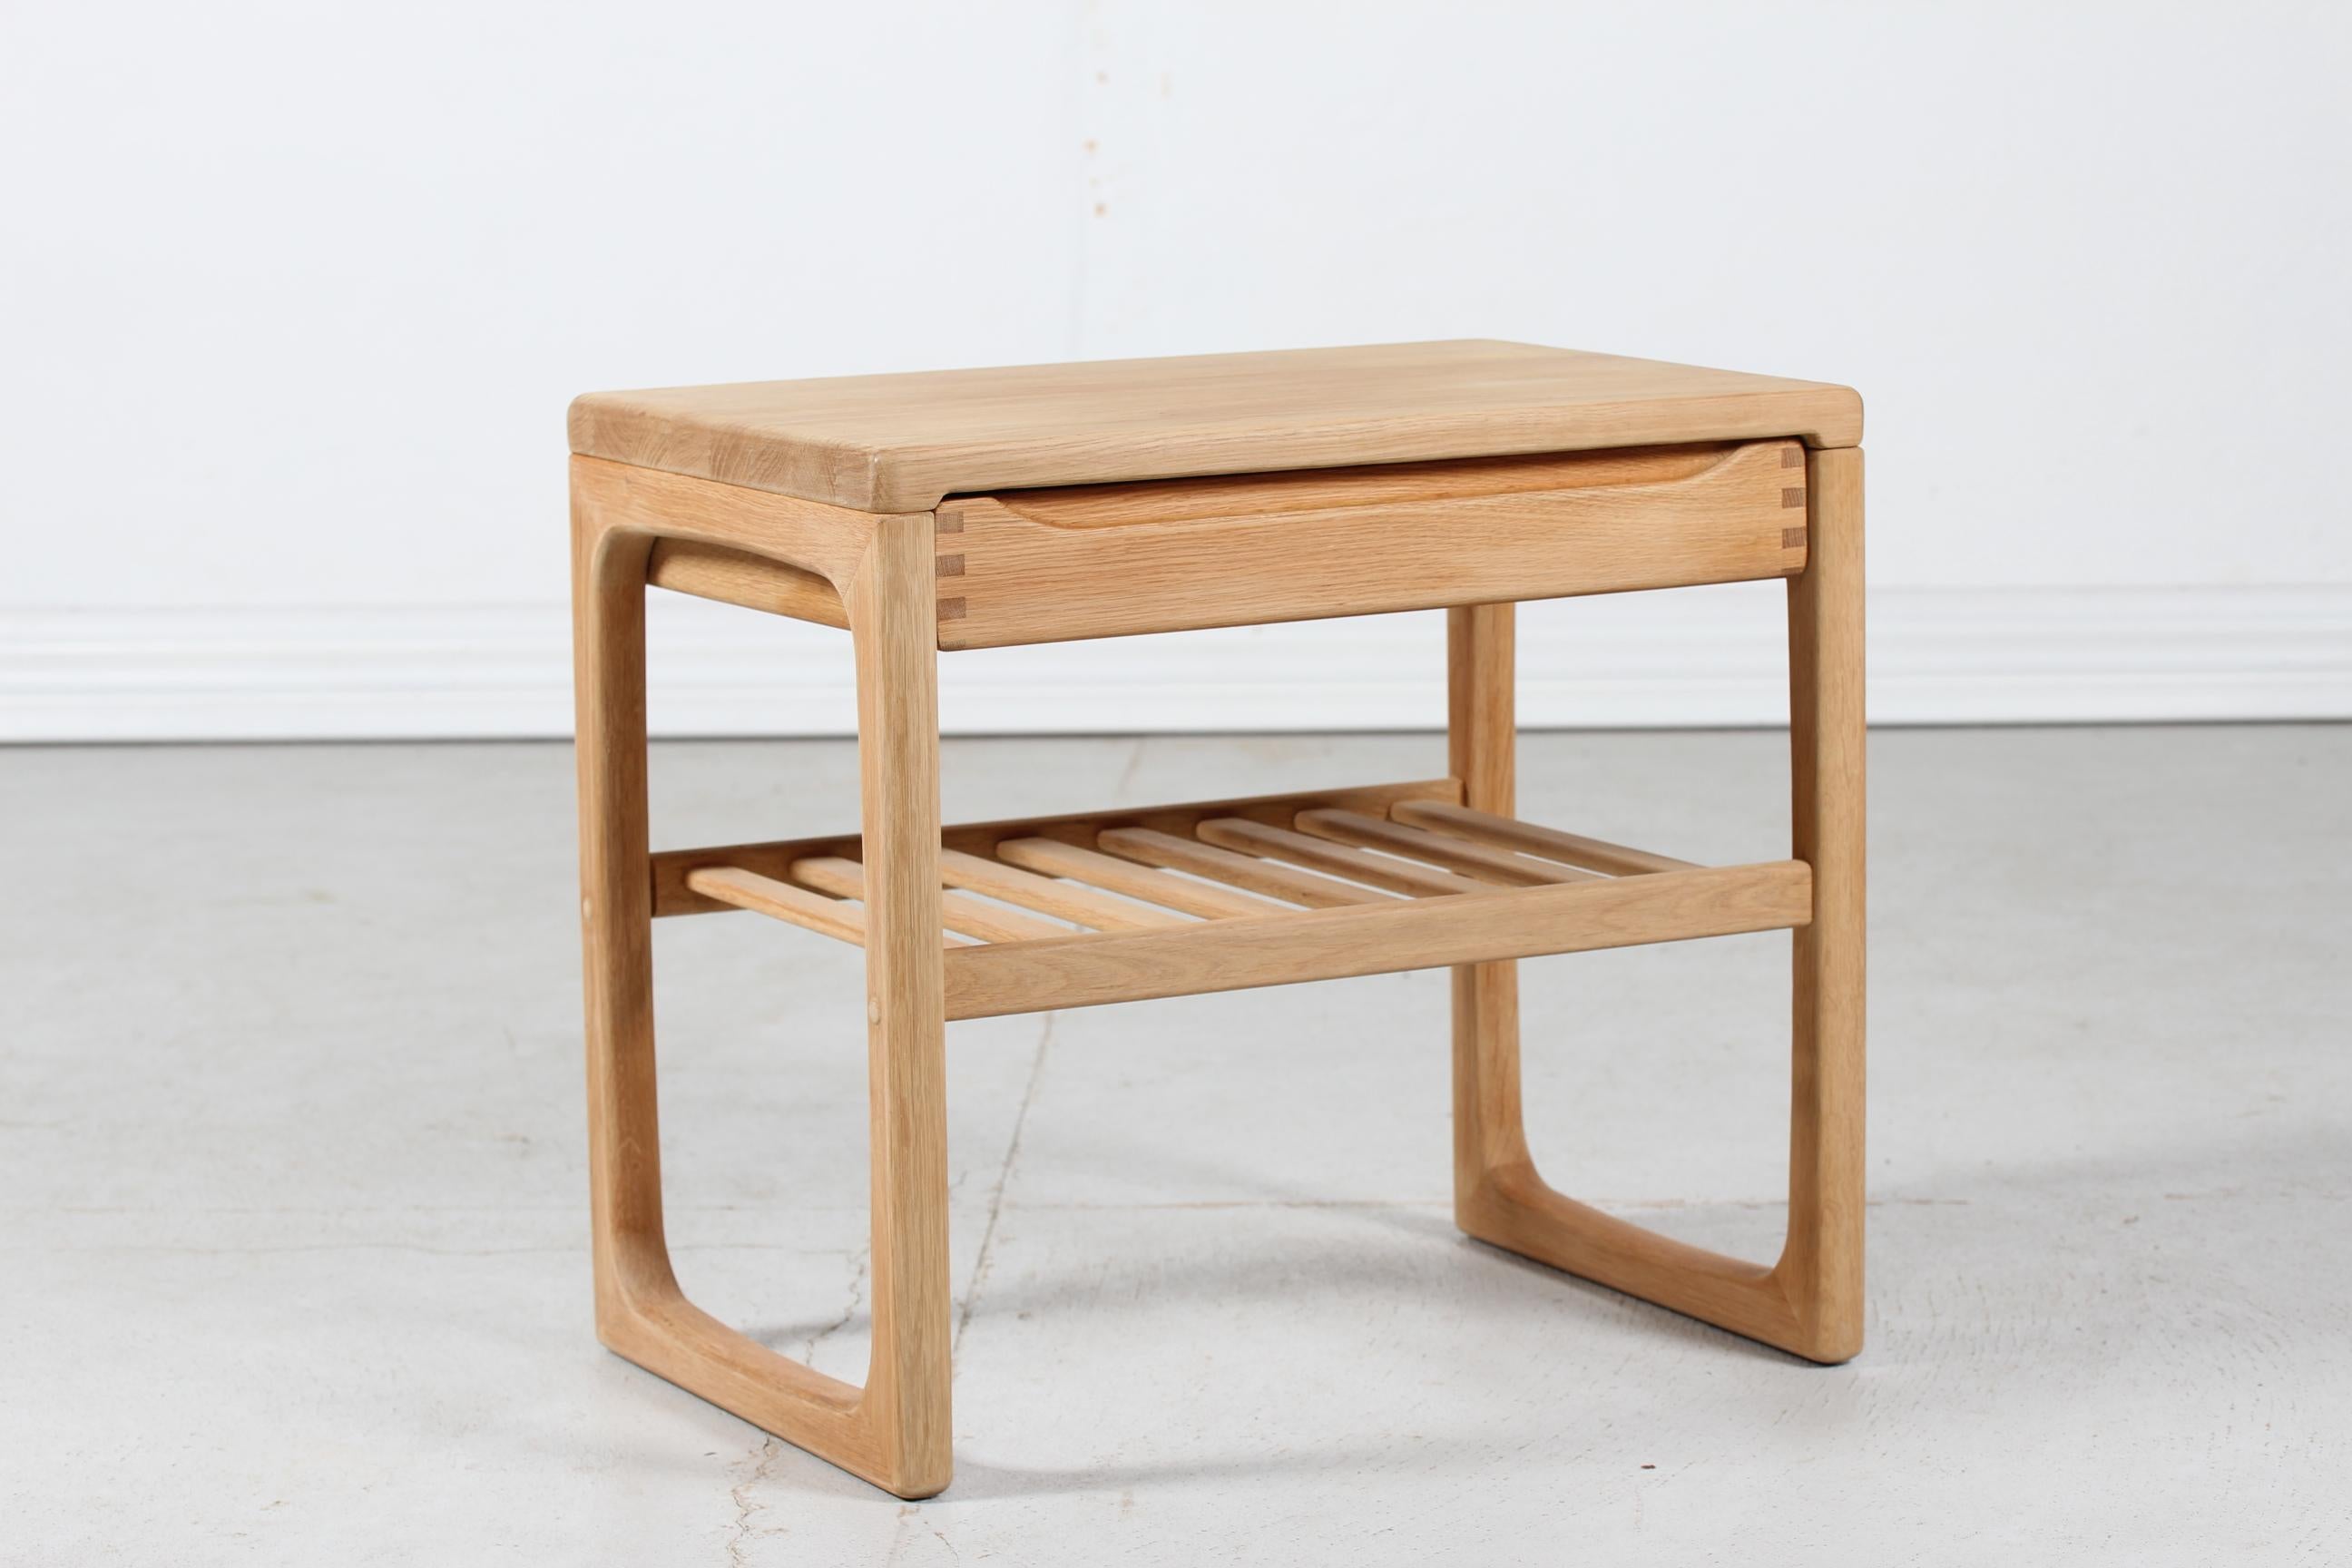 Table d'appoint moderne danoise avec tiroir et étagère fabriquée par un fabricant de meubles danois dans les années 1980.

La table d'appoint est fabriquée en chêne massif traité au savon

Très bon état vintage - prêt à l'emploi.
 